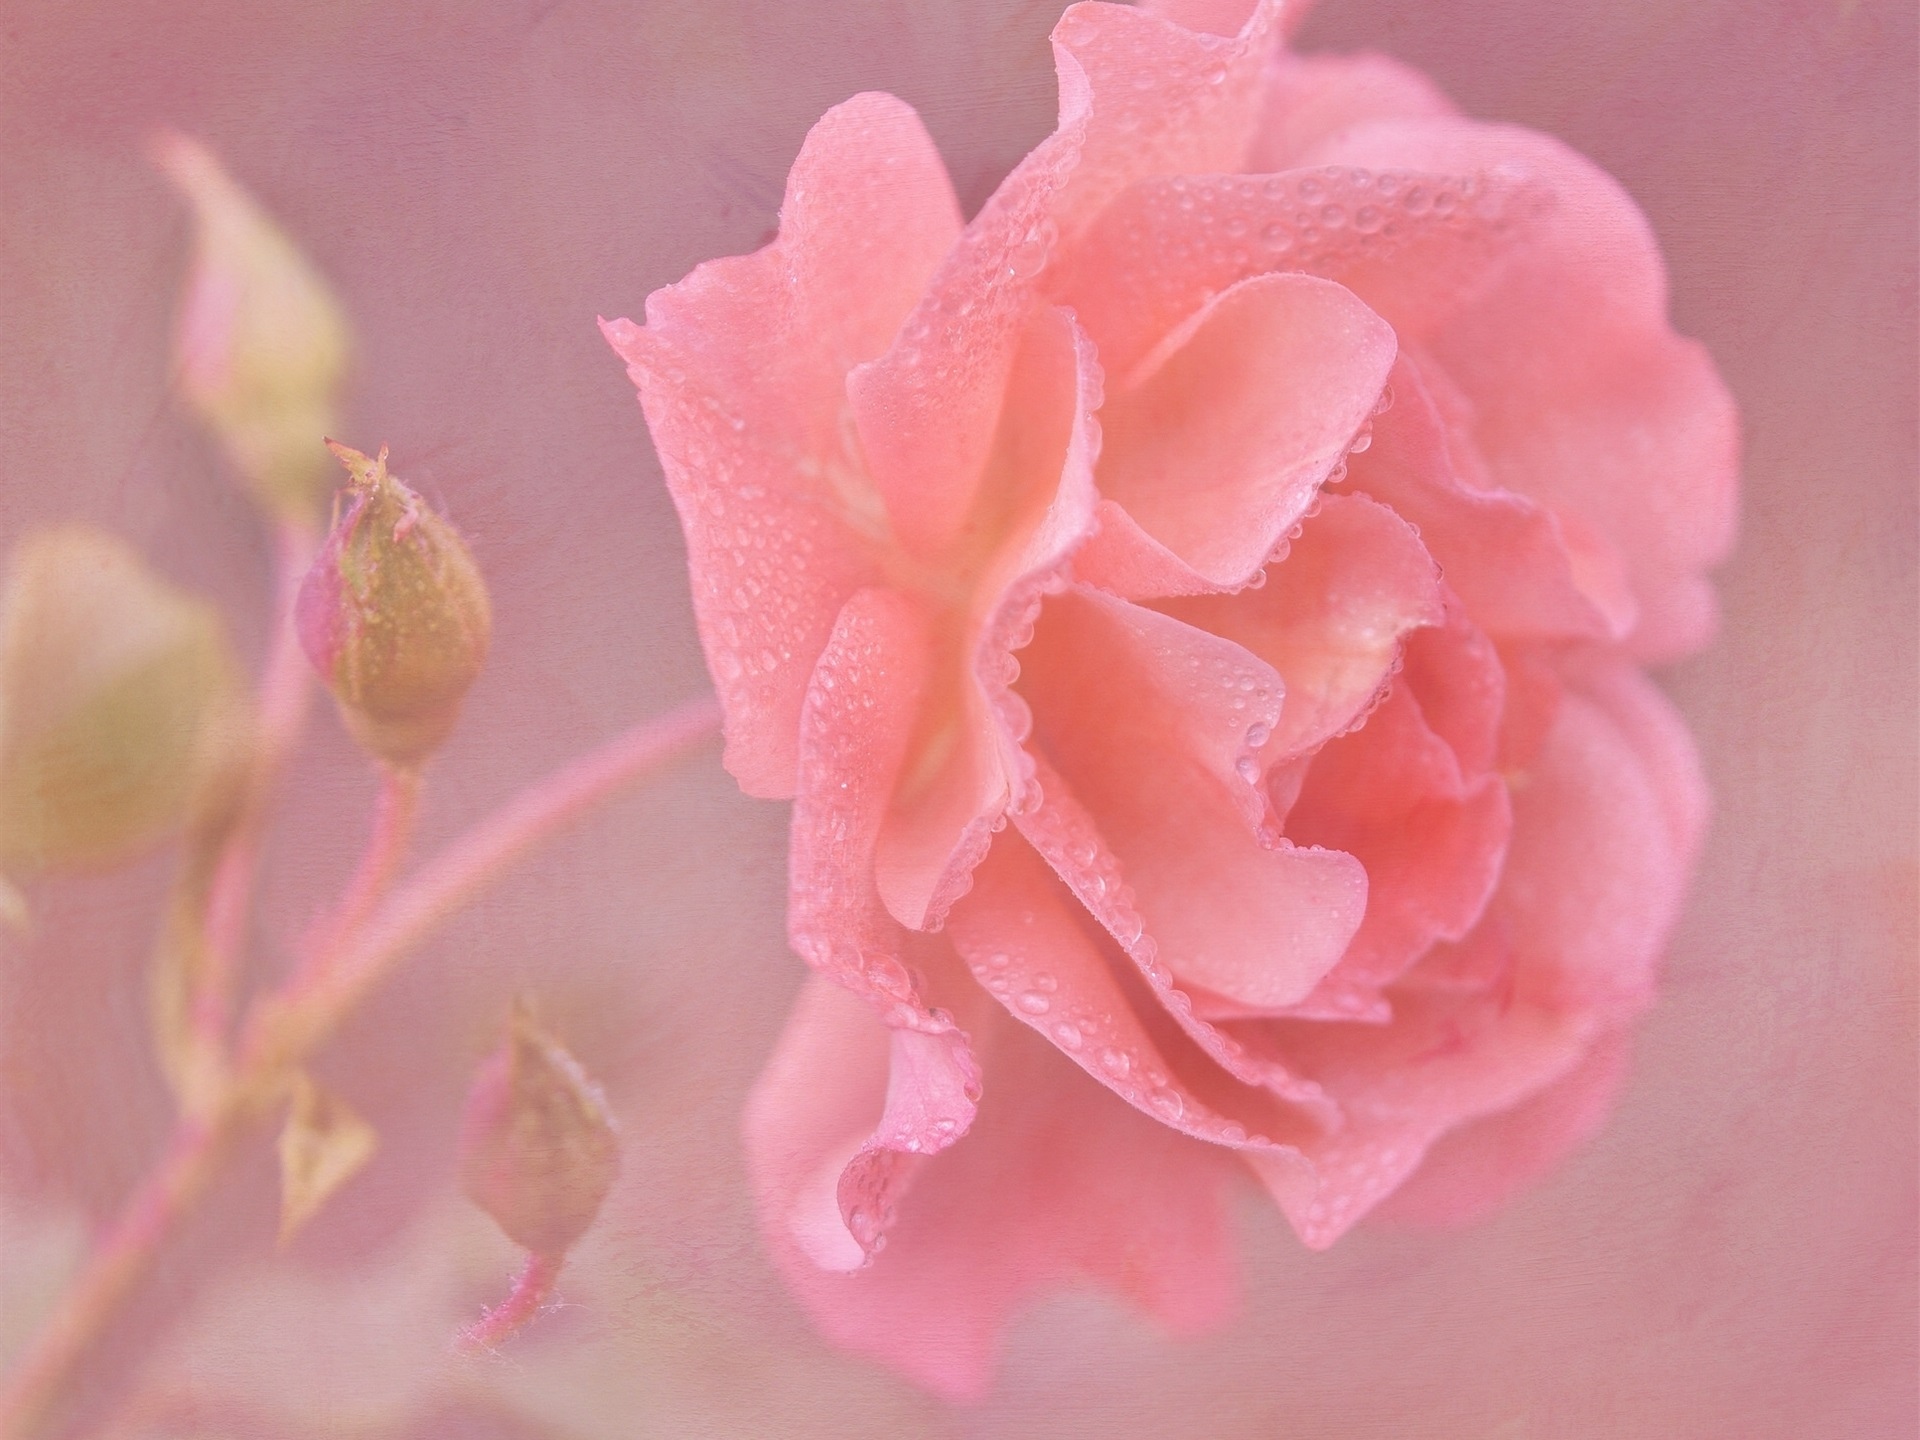 粉红色的玫瑰花朵特写镜头,水滴壁纸1440x900分辨率查看